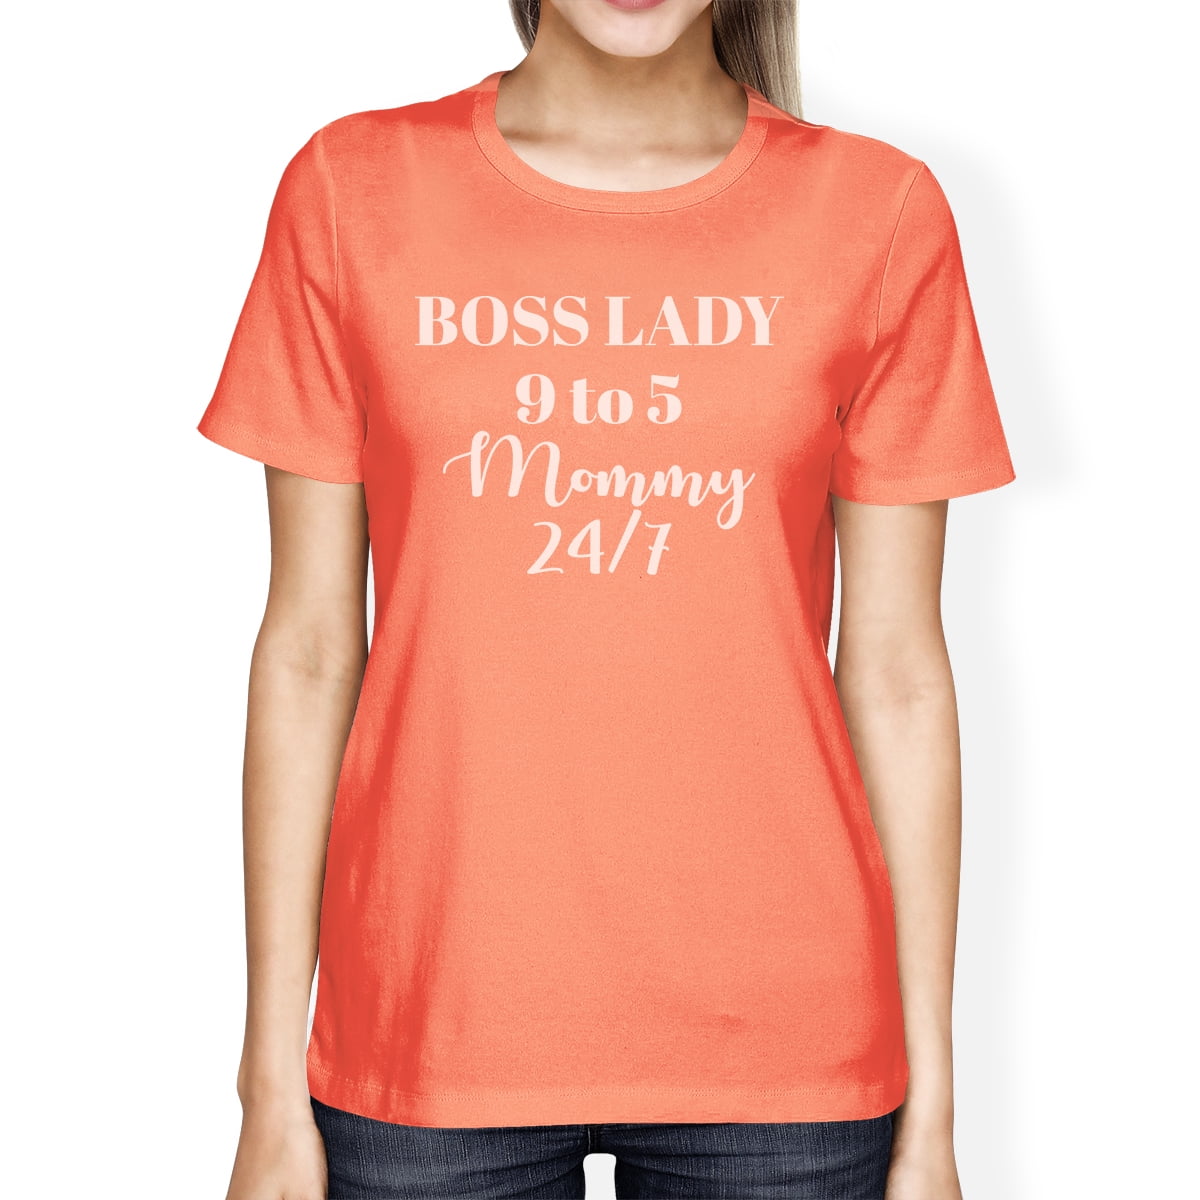 boss lady t shirt express